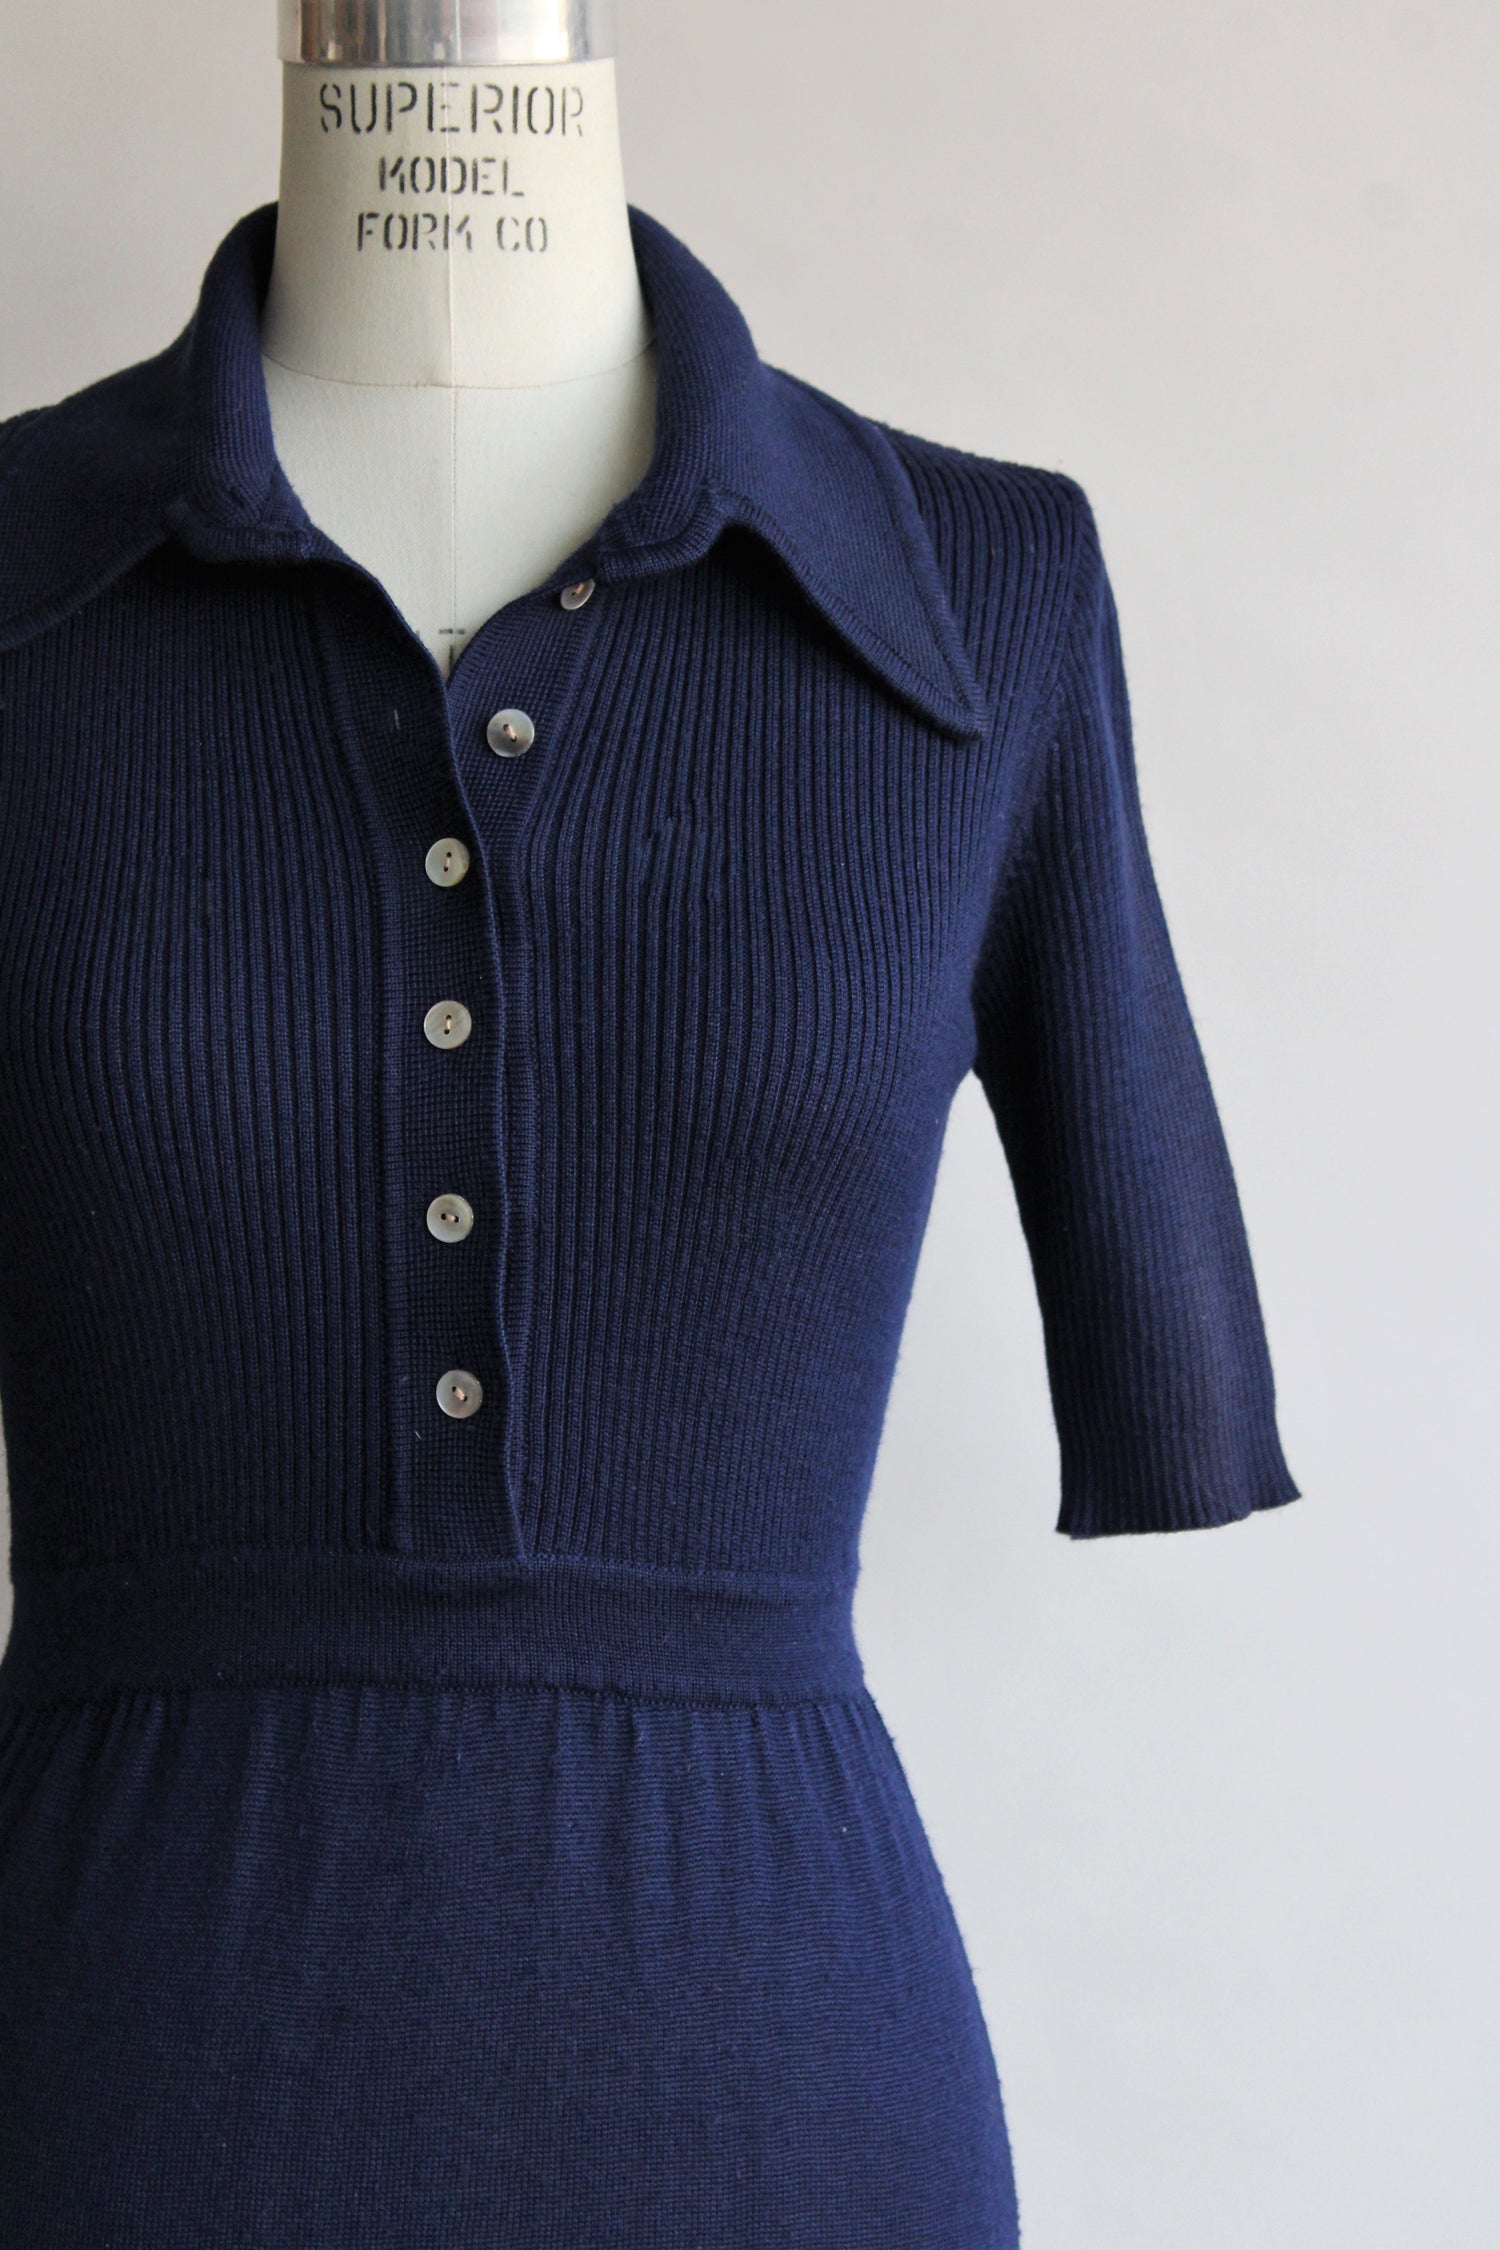 Vintage 1970s Navy Blue Knit Dress